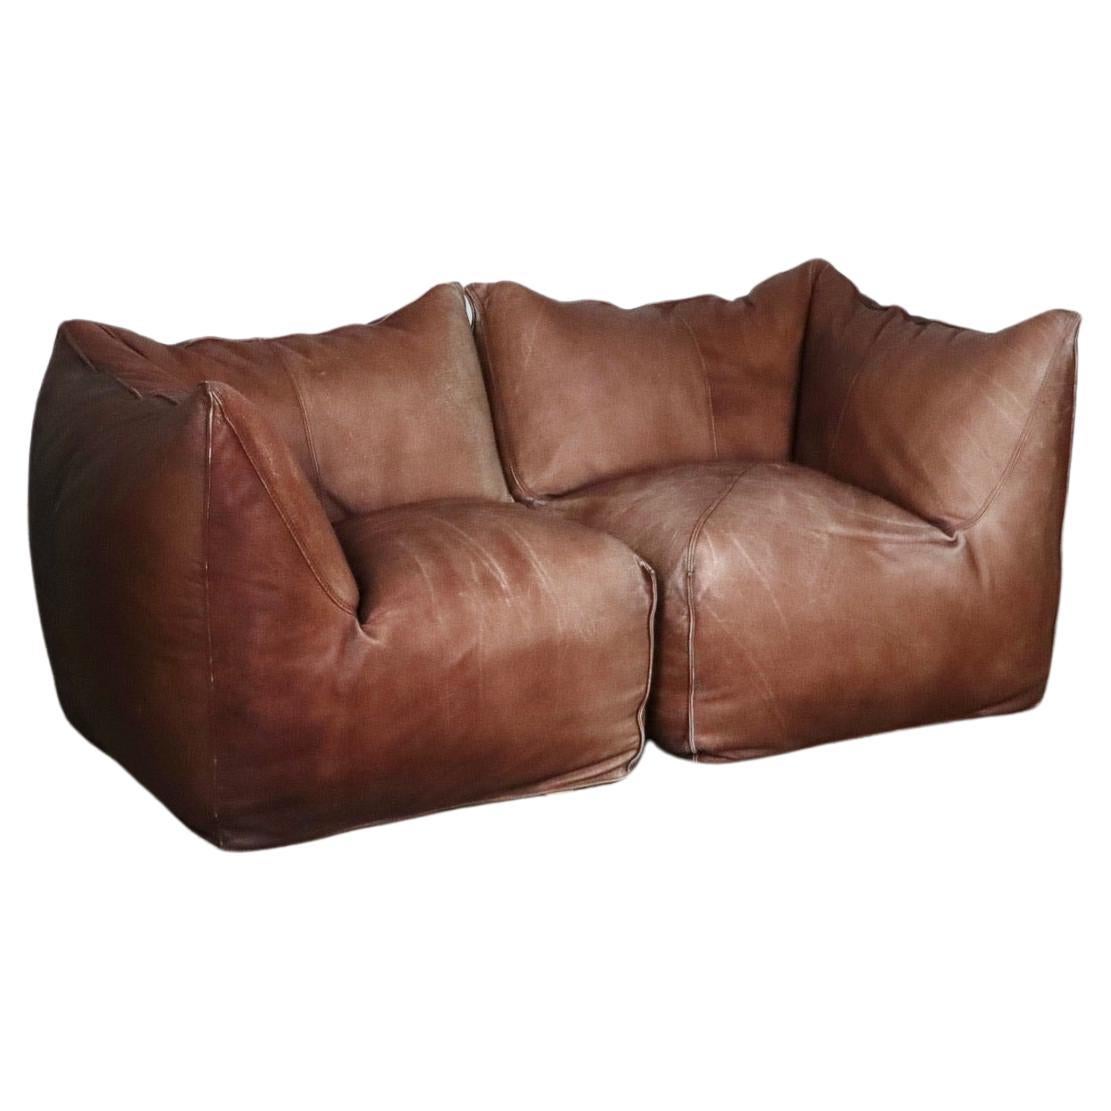 Le Bambole Modular Sofa In Light Brown Buffalo Leather, Mario Bellini B&B Italia For Sale